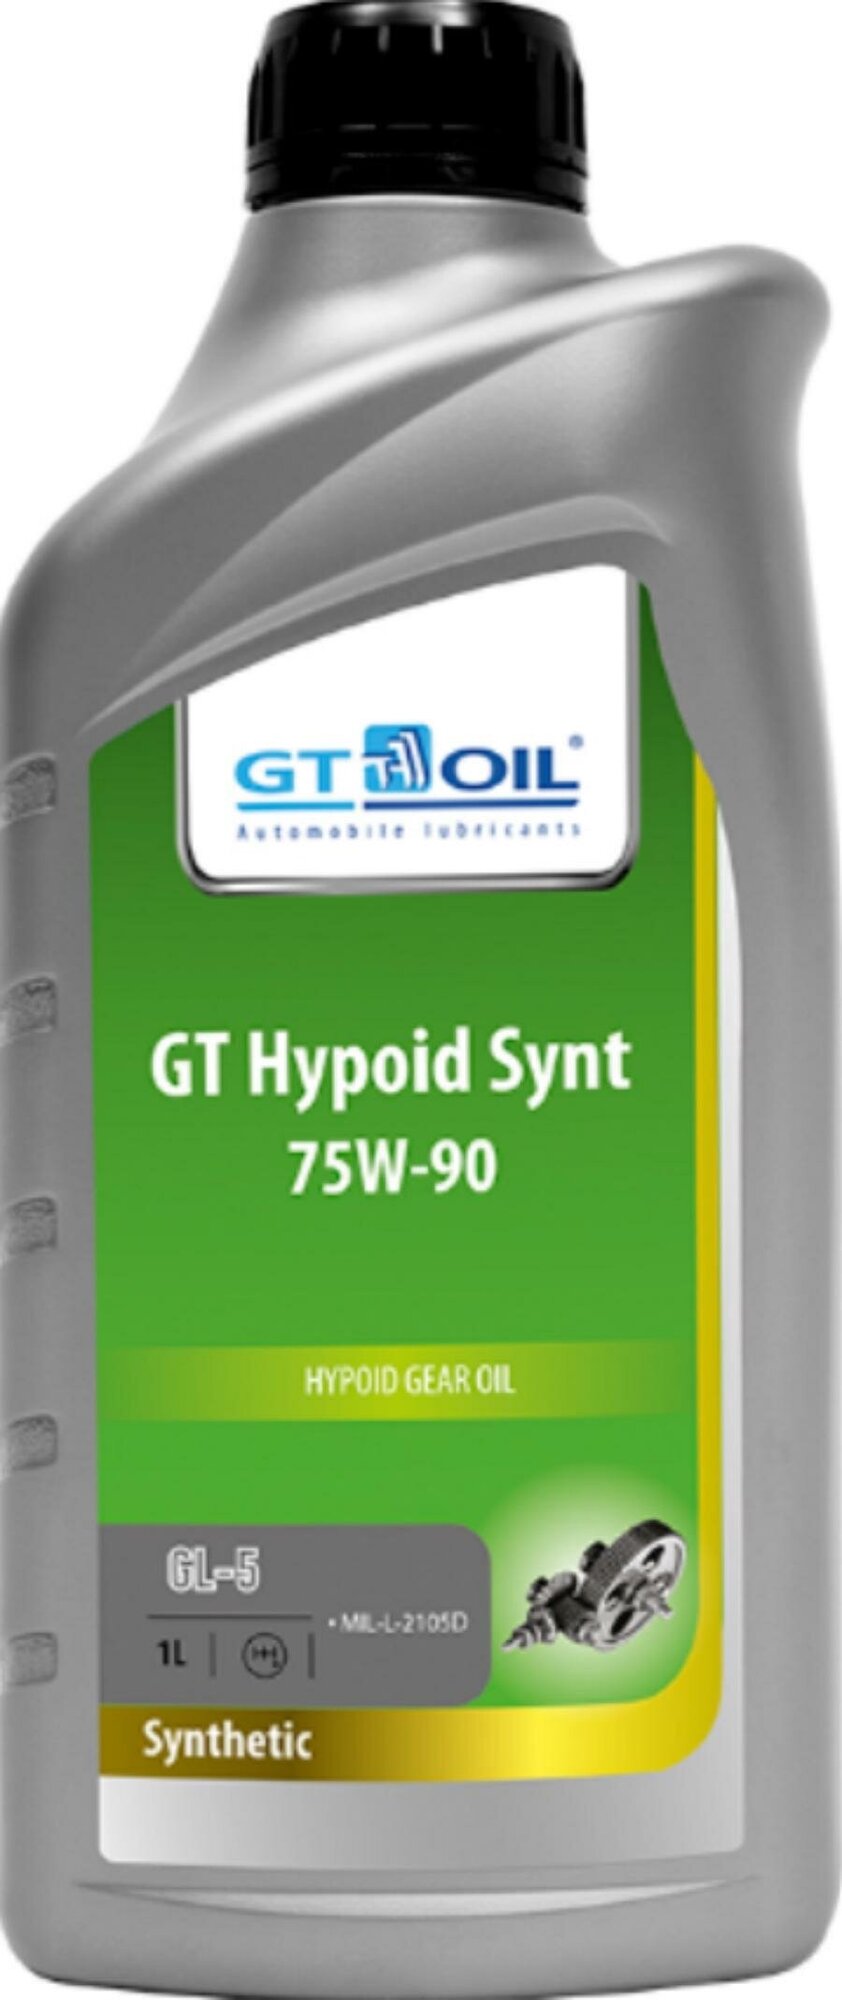 Масло трансмиссионное синтетическое всесезонное GT Hypoid Synt, SAE 75W-90, API GL-5, 1 л GT OIL / арт. 8809059407868 - (1 шт)